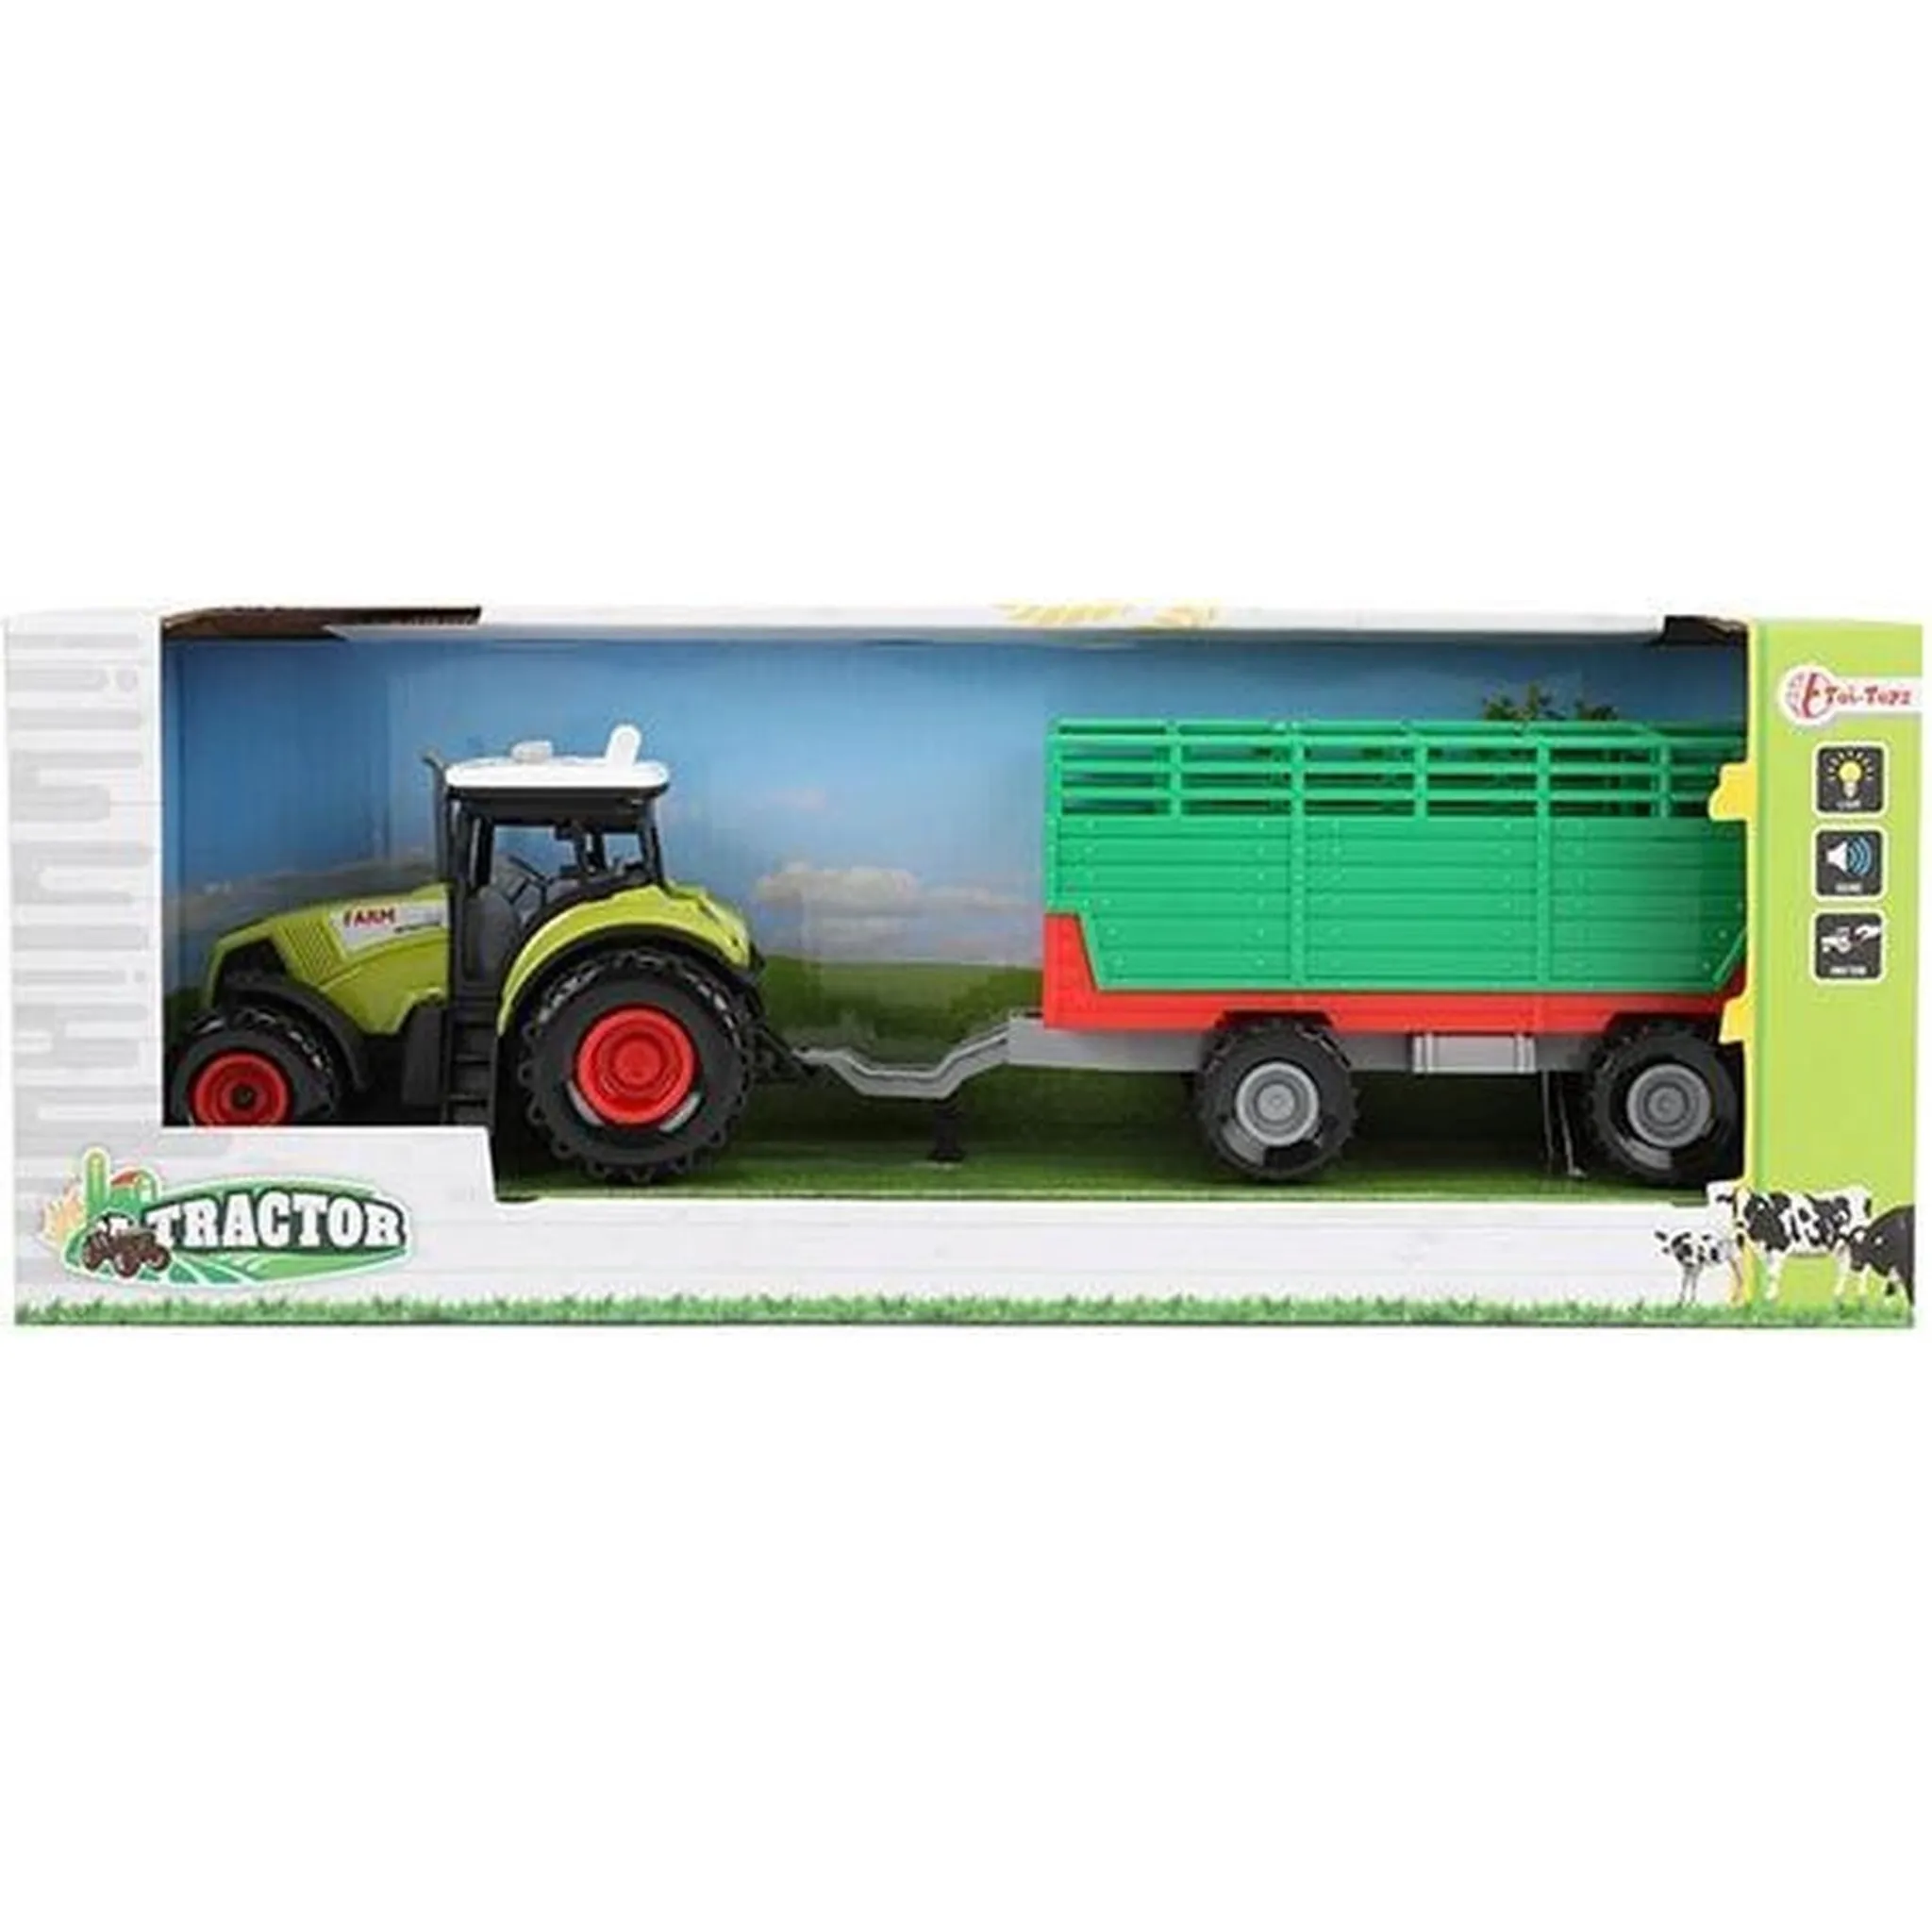 Besttoy - Traktor mit Anhänger und Bauernhof-Tieren